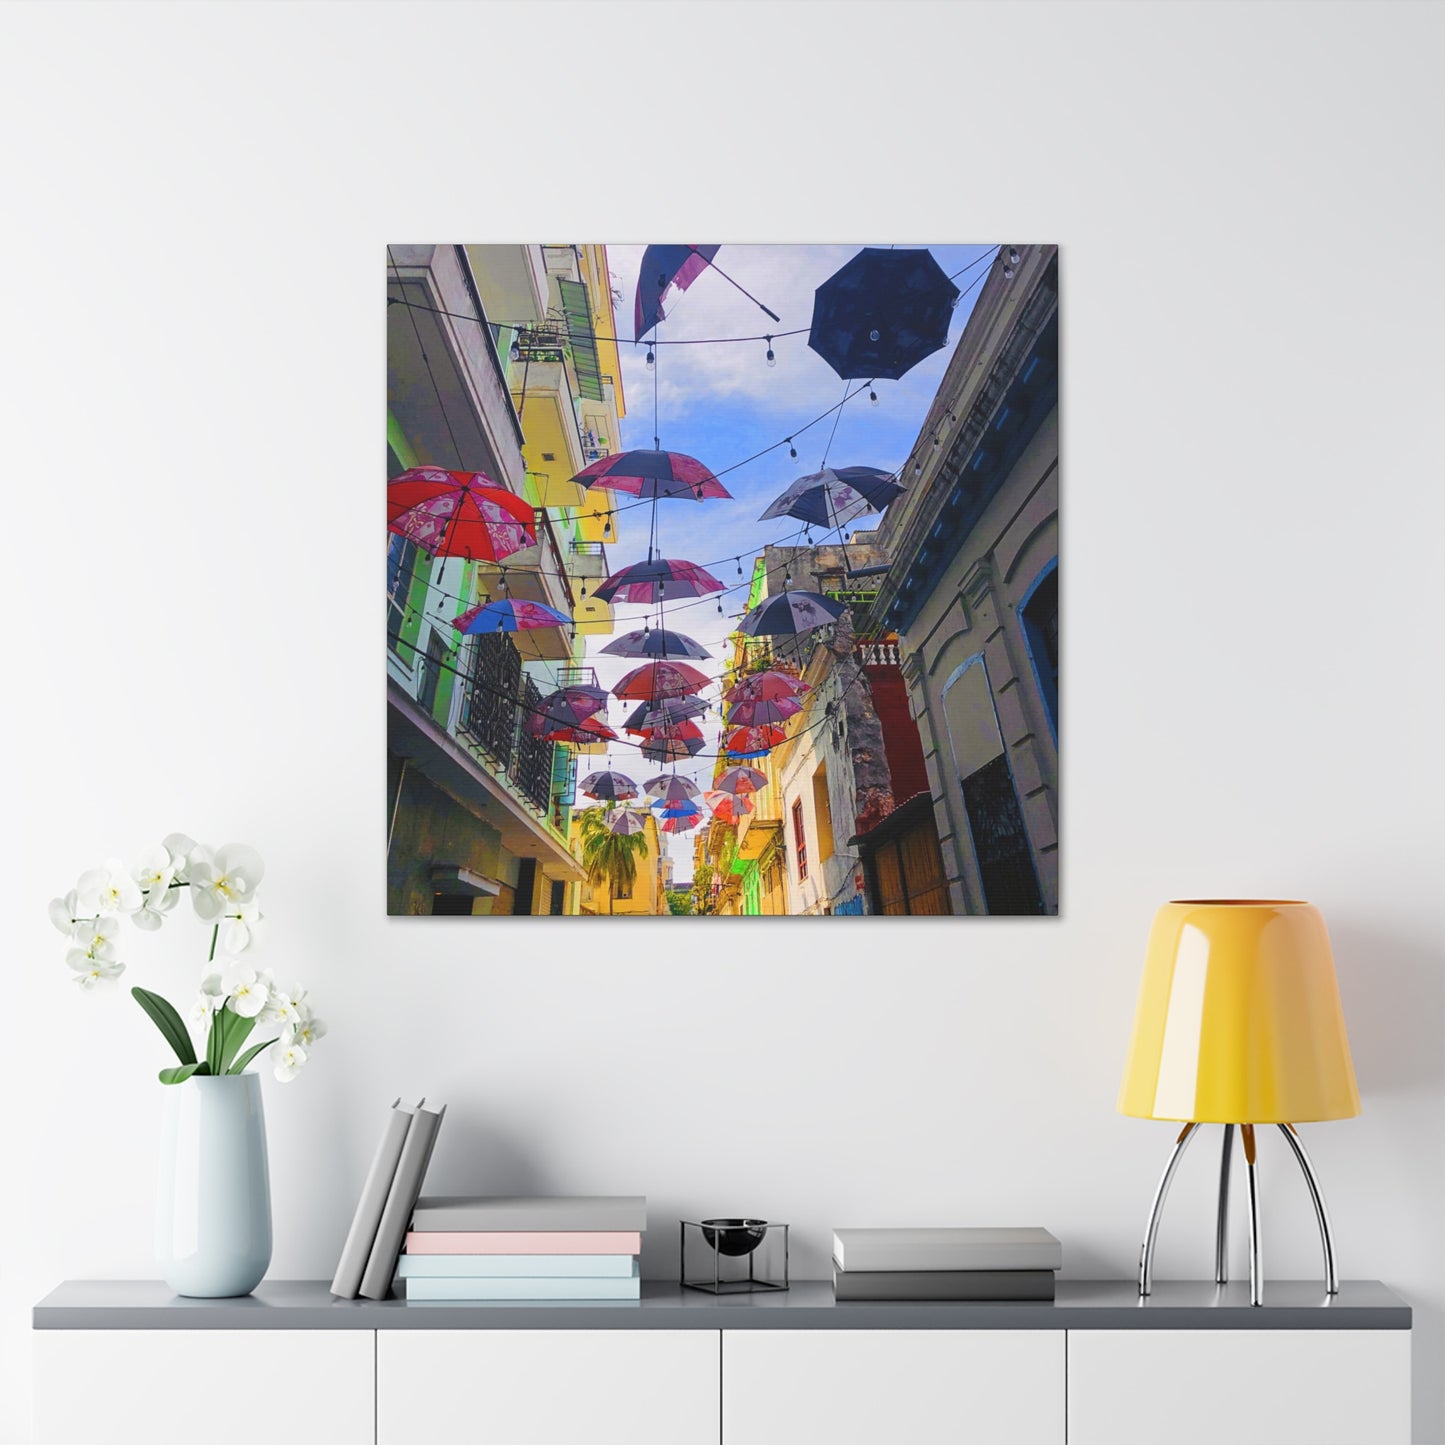 Umbrellas of Havana - Gallery Canvas